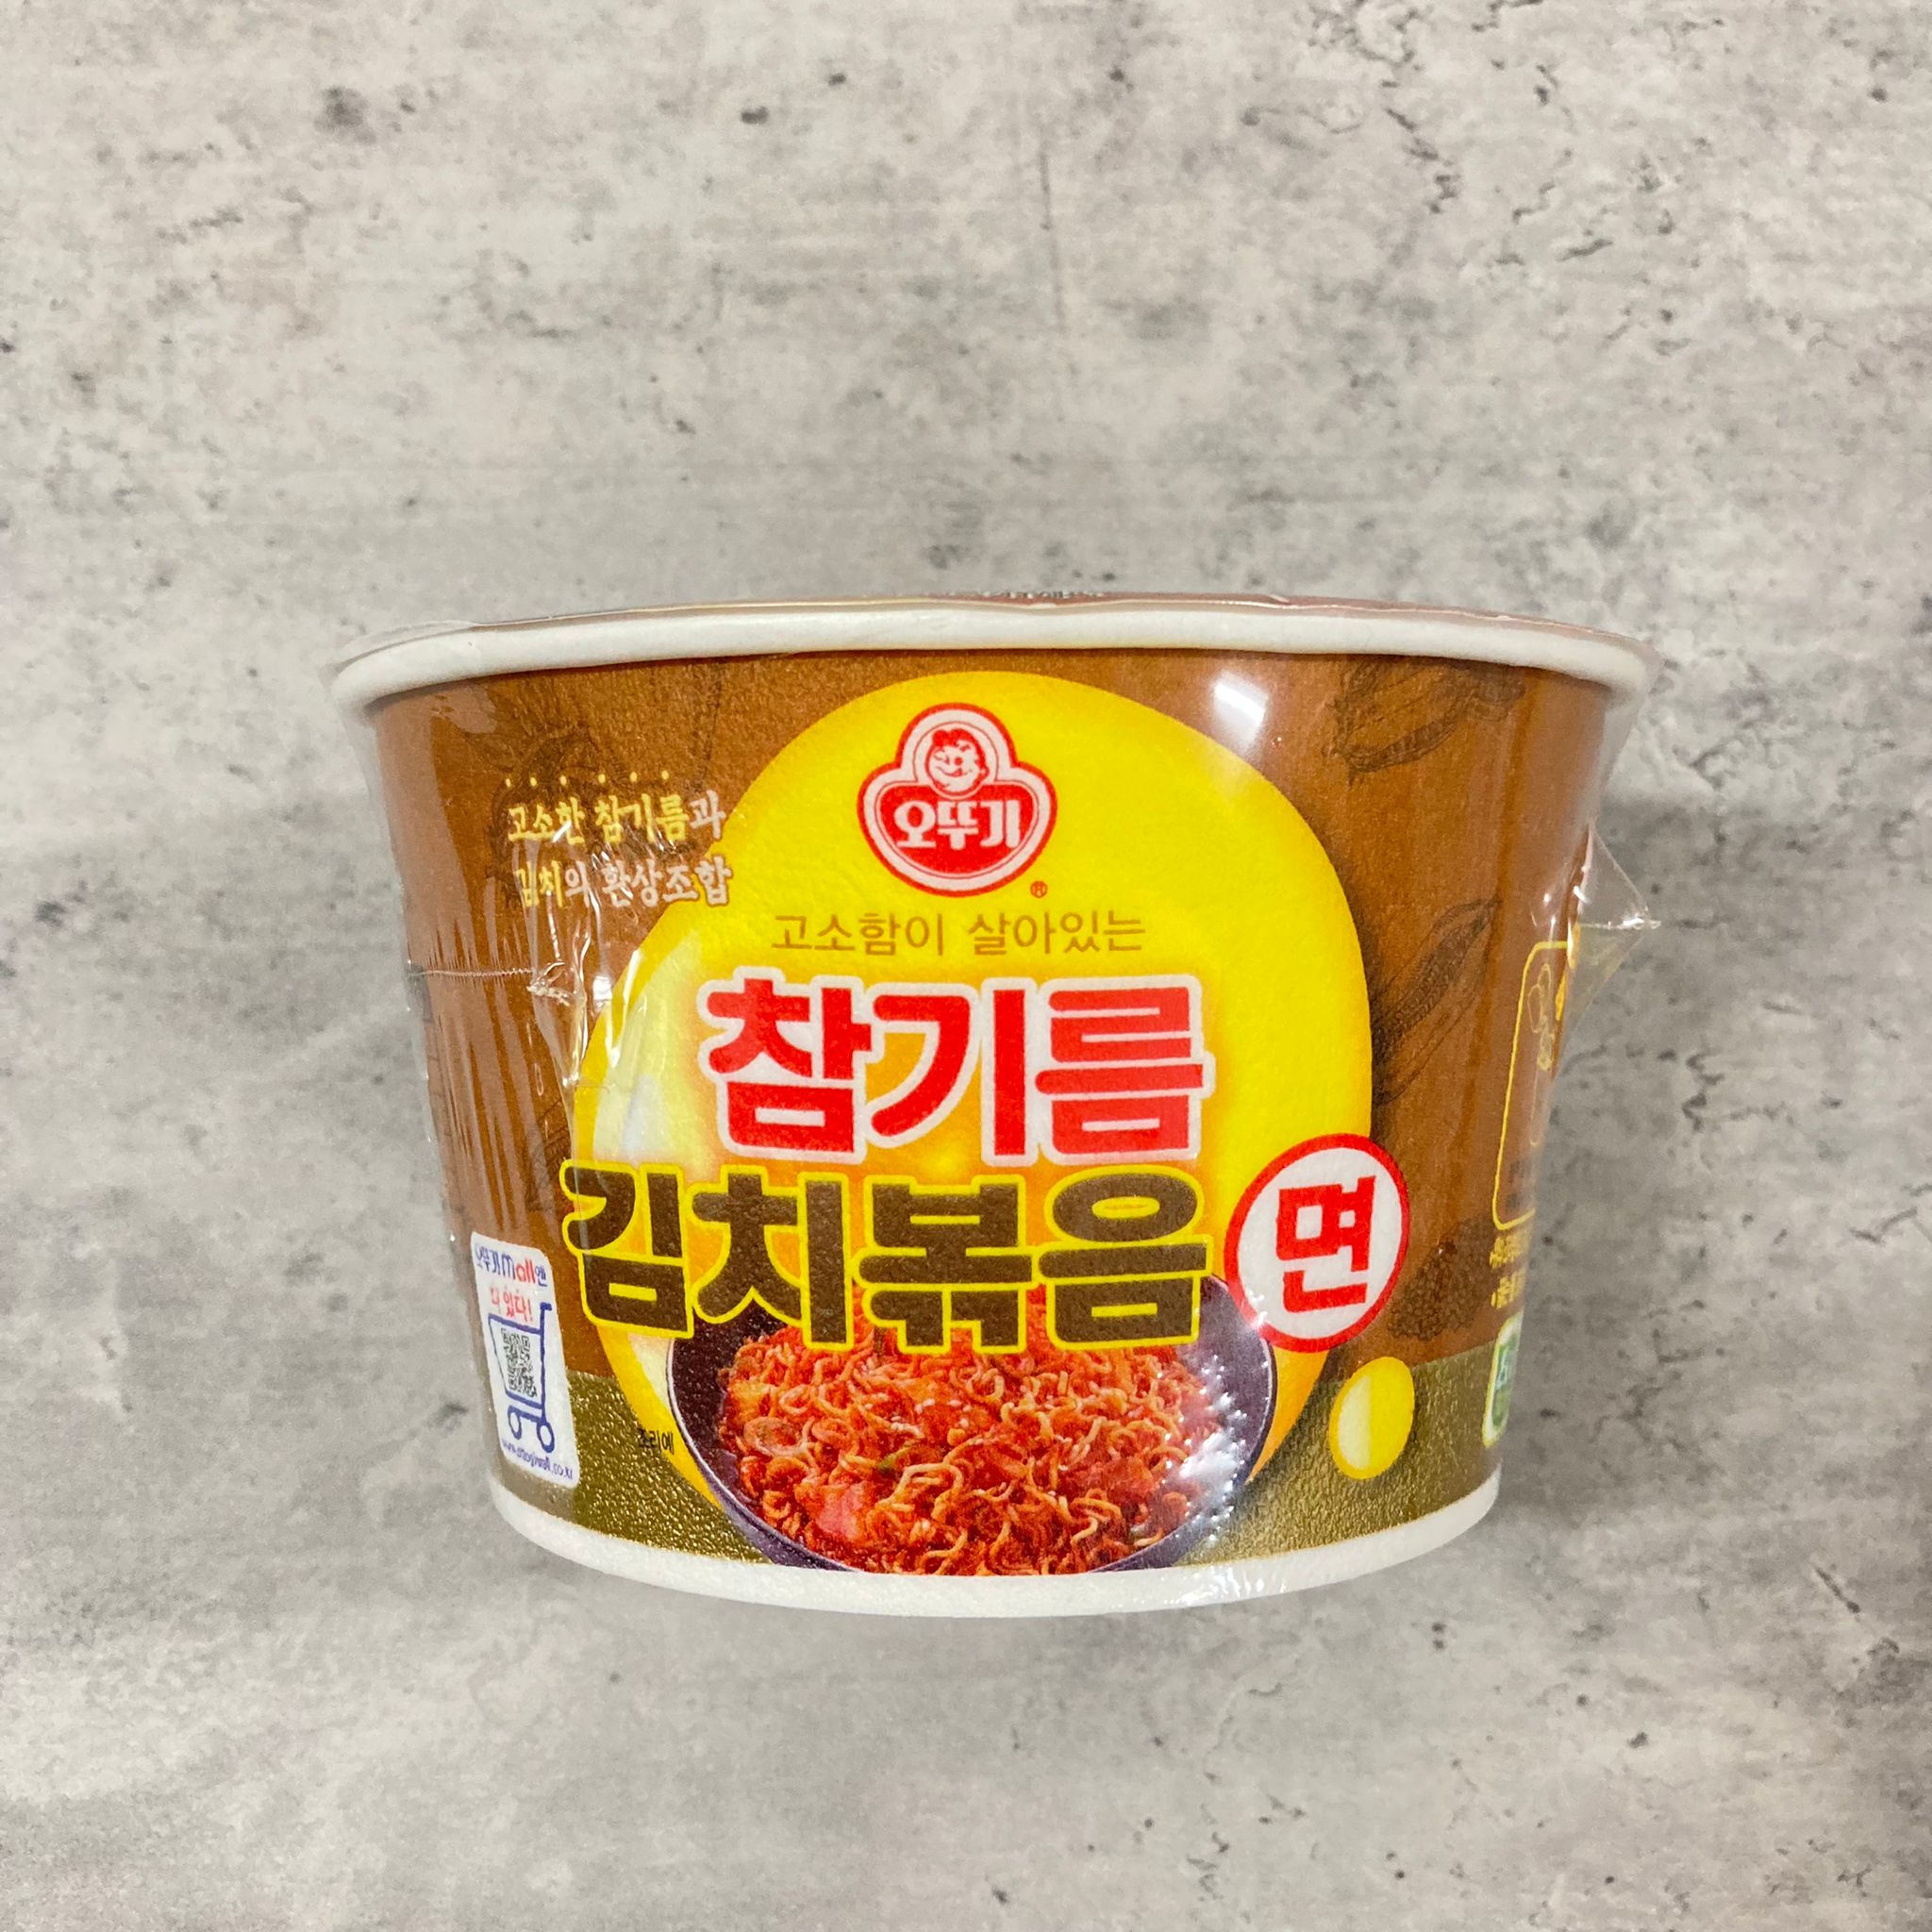 韓國食品-[Ottogi] Sesame Oil and Kimchi Fried Cup Noodle 120g